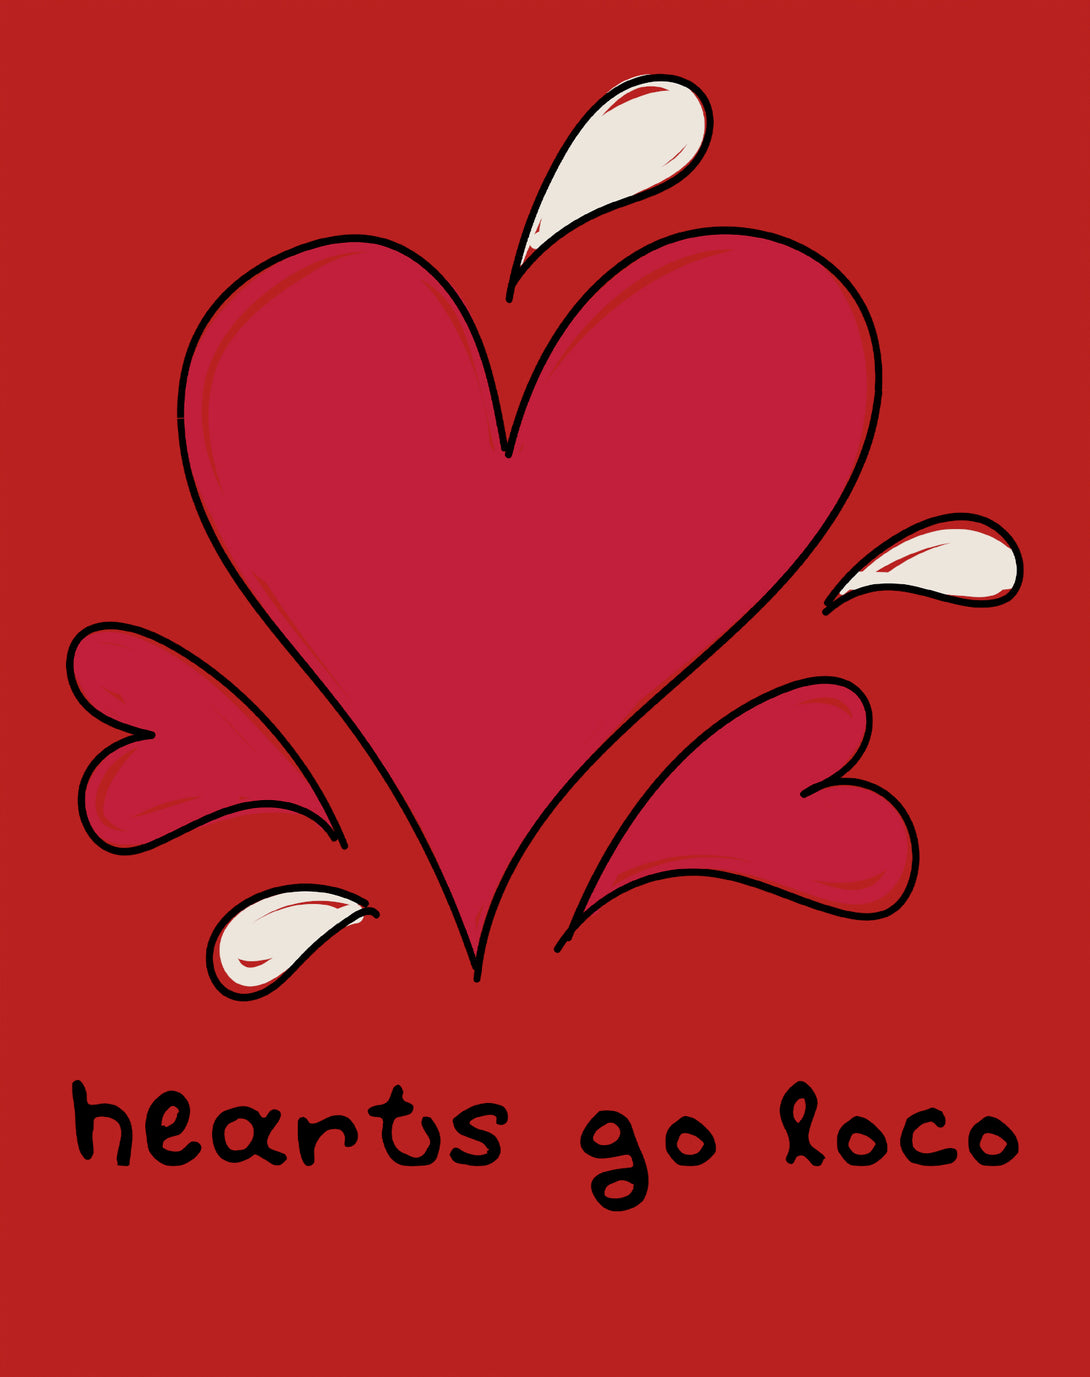 Anti Valentine Hearts Go Loco Women's T-shirt Red - Urban Species Design Close Up